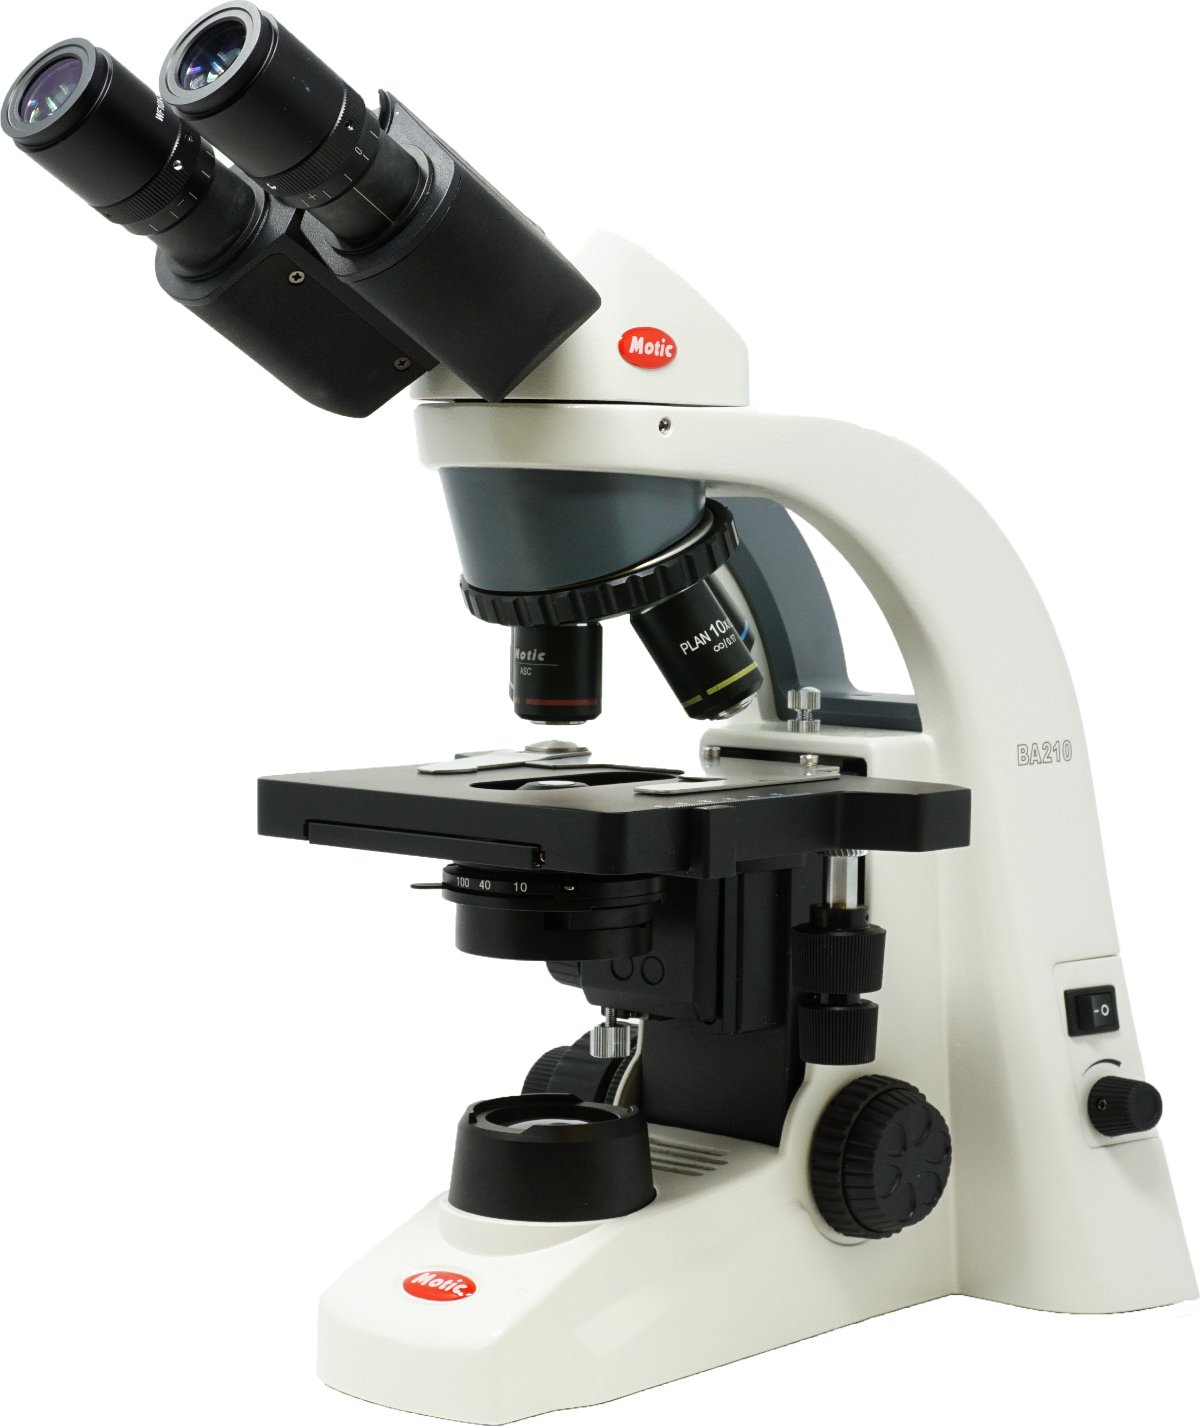 Microscopio ergonómico Binocular c/Optica Plan Acromática Corregida a Infinito e iluminación LED BA210S LED Binocular